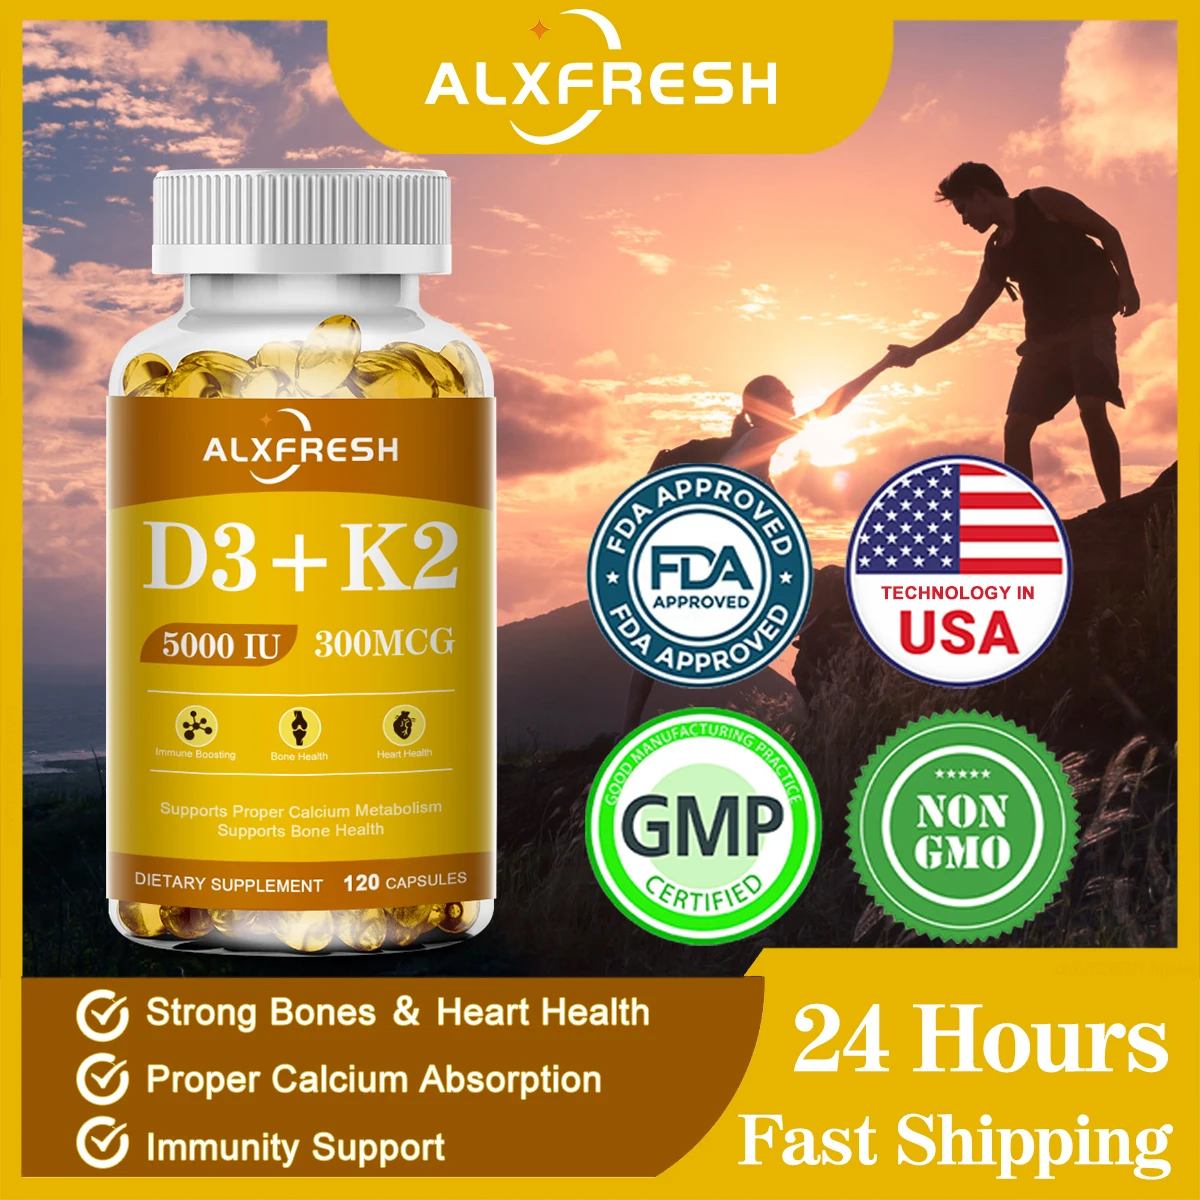 

Alxfresh, органический витамин D3K2 в капсулах для улучшения впитывания кальция, улучшения здоровья костей и суставов, повышения иммунитета, поддержки здоровья сердца